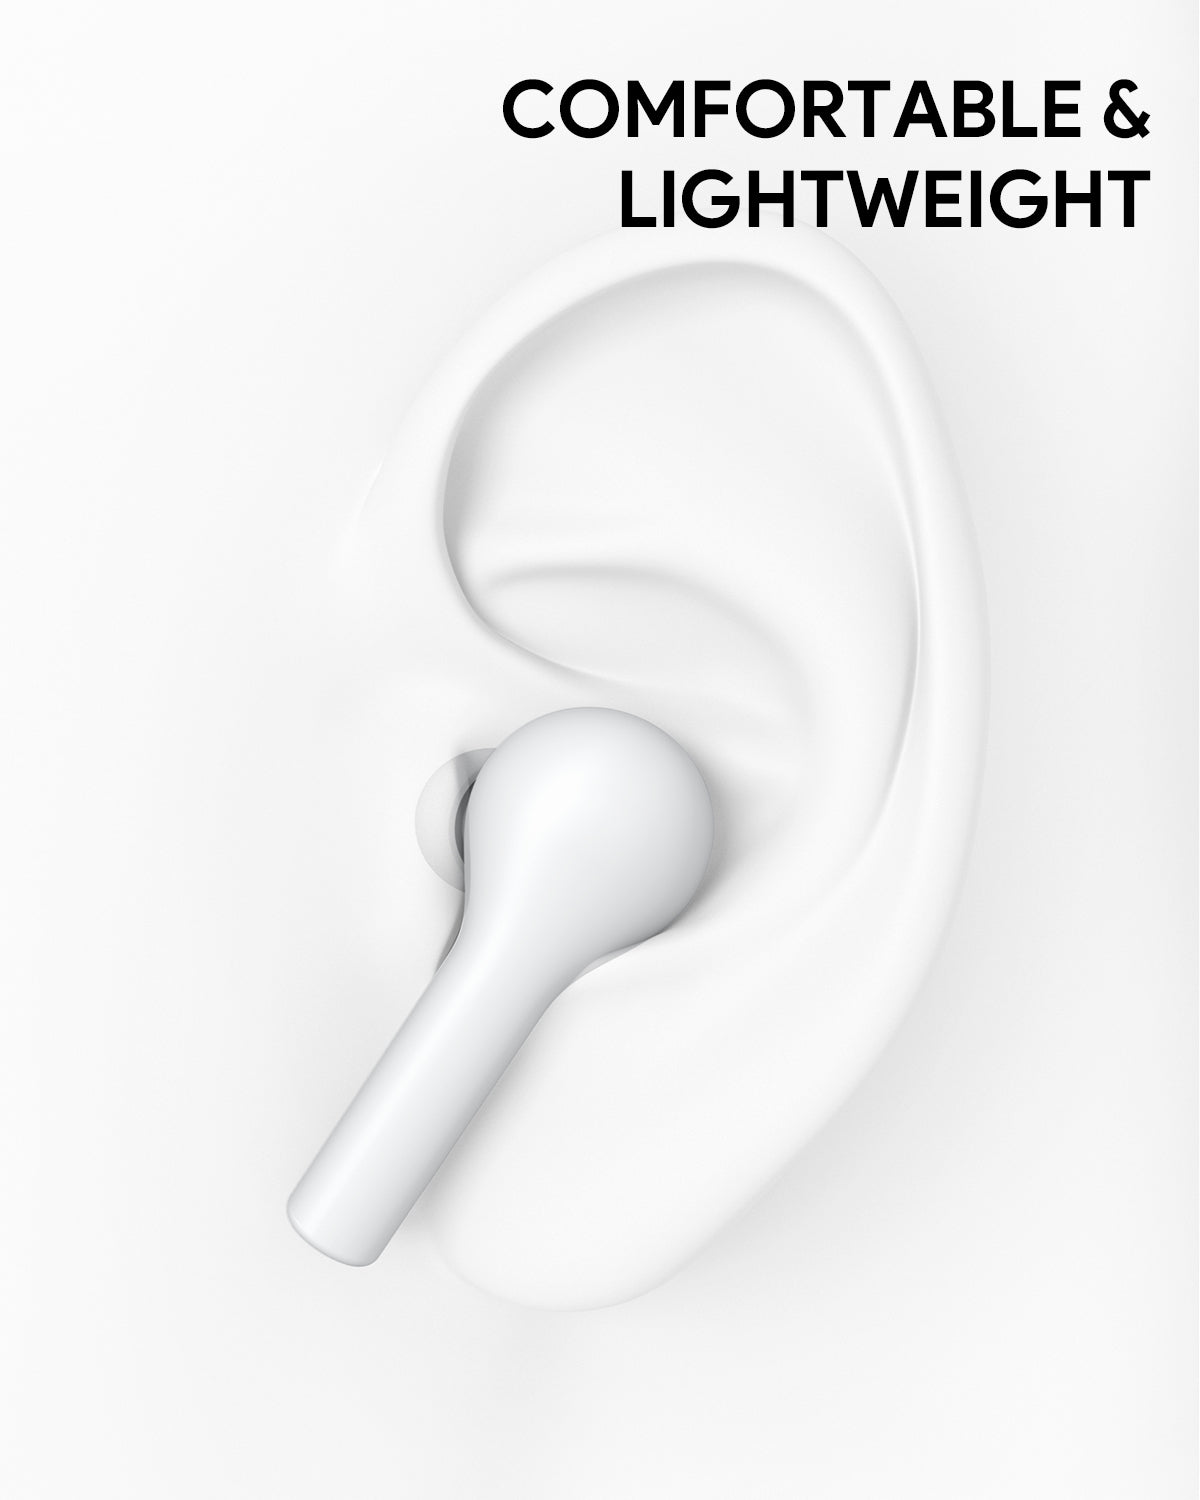 AUKEY True Wireless In-Ear Kopfhörer Weiß EP-T21